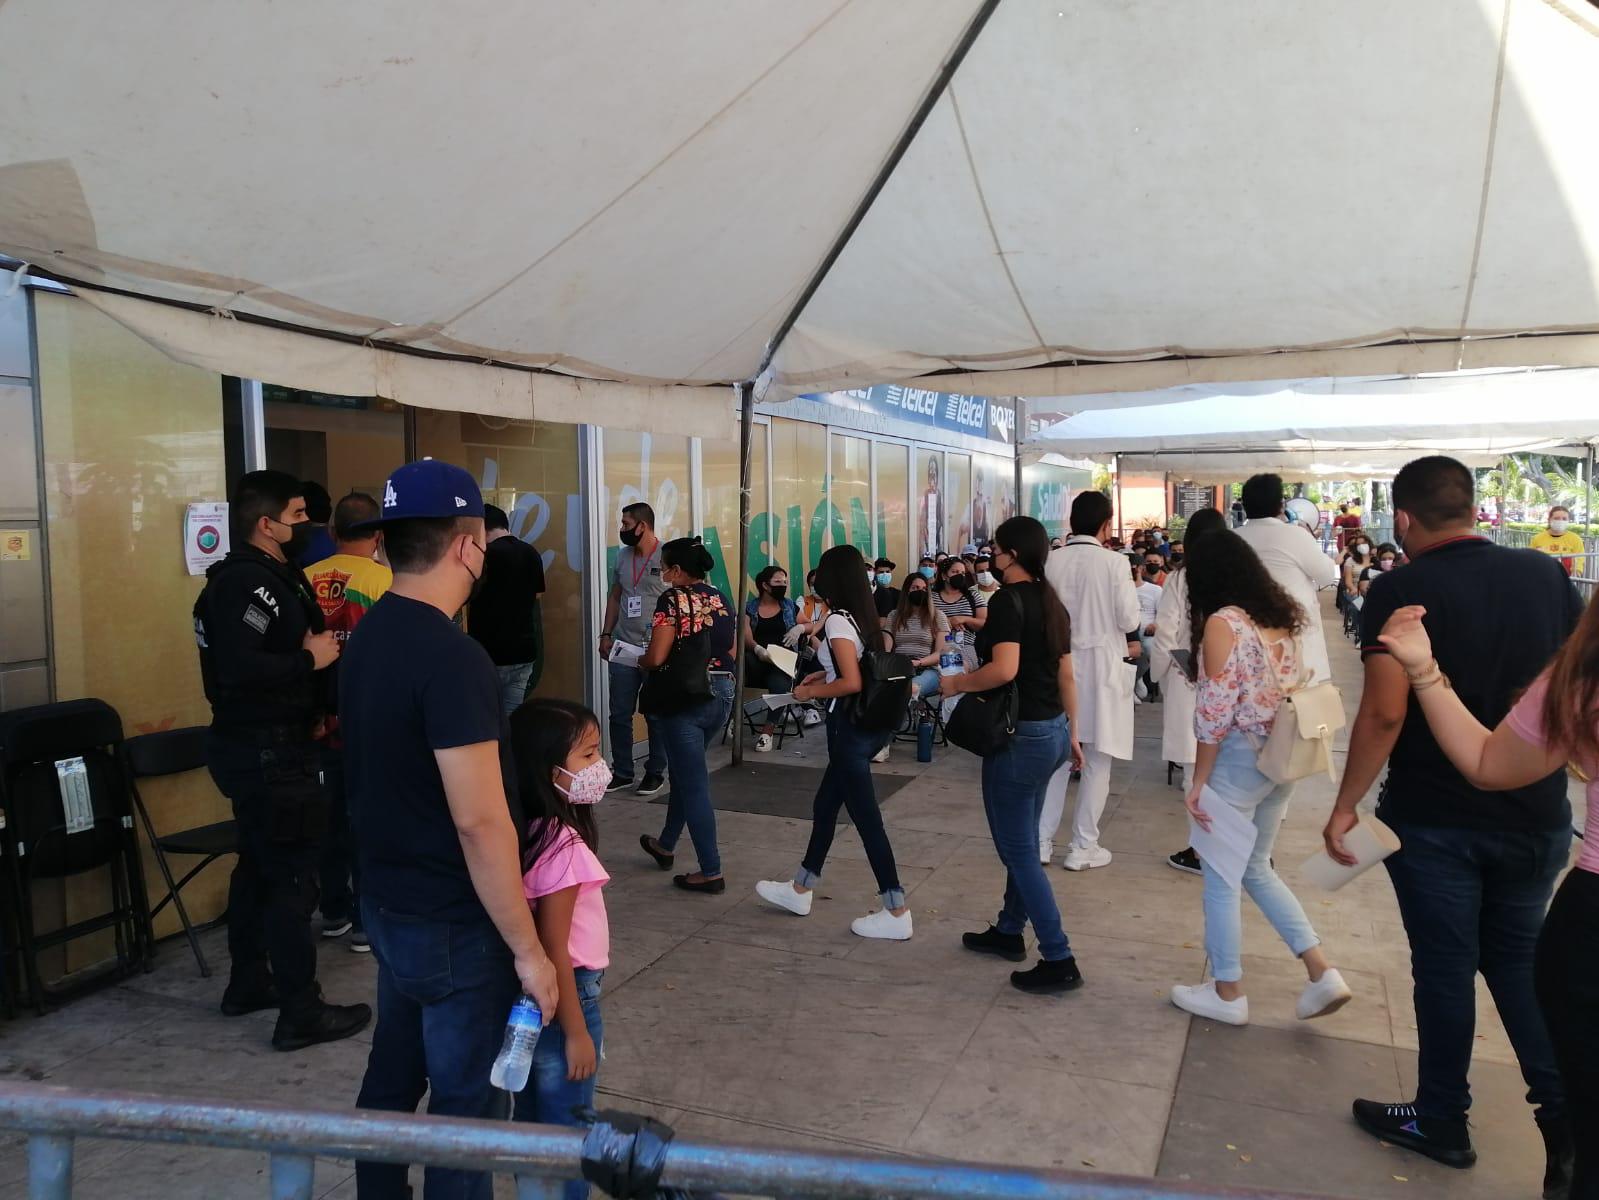 $!Filas de jóvenes rodean el polideportivo JSM en espera de ser vacunados contra Covid